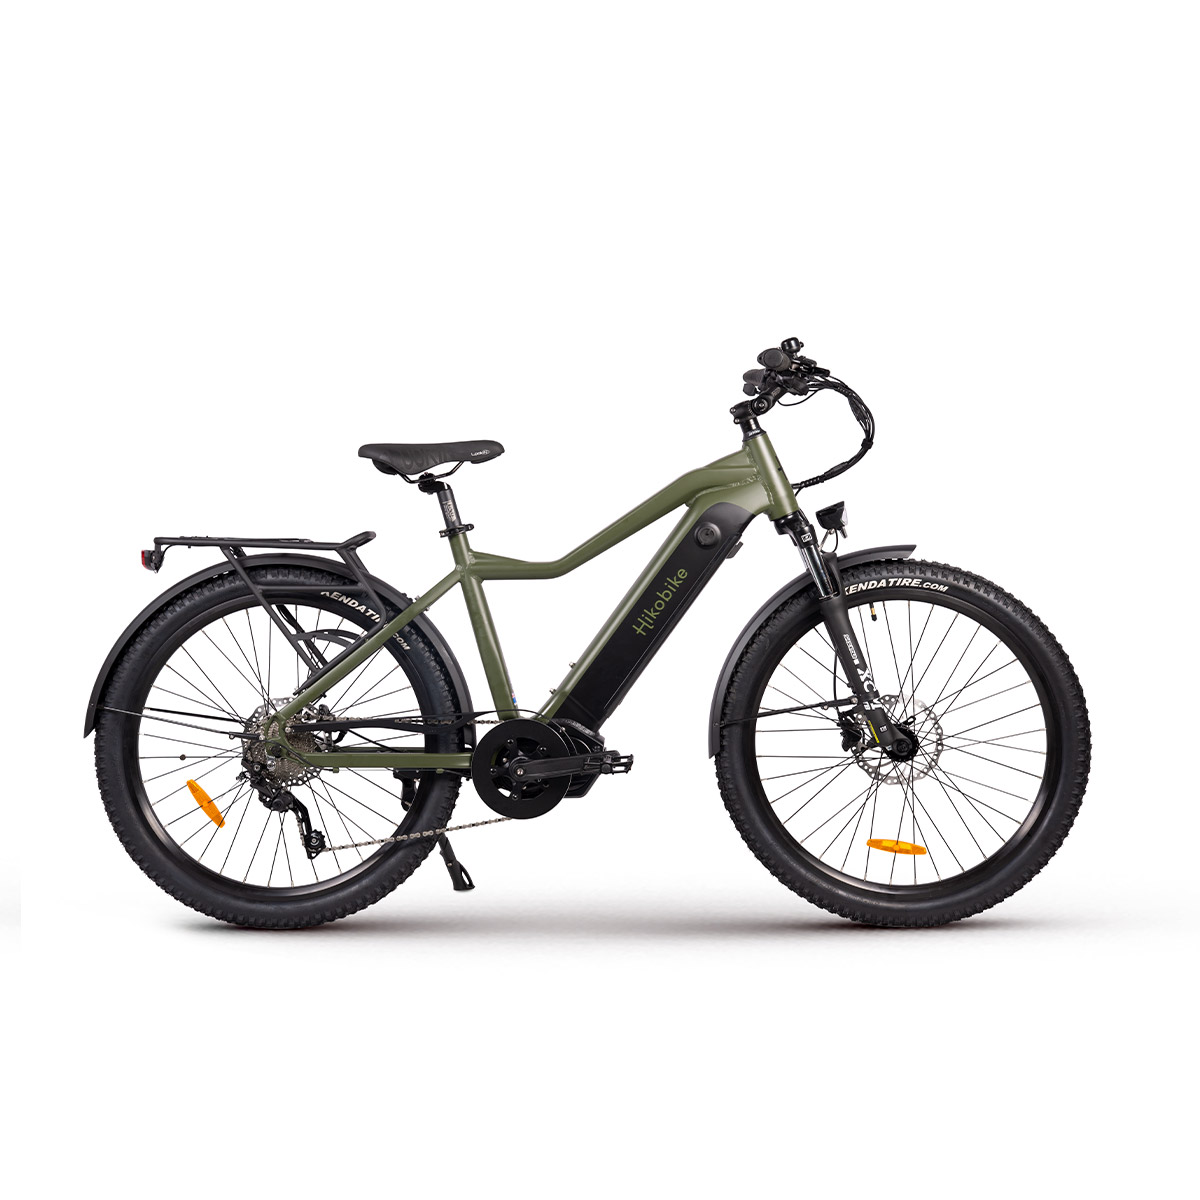 Ascent e-Bike - Olive Green electric bike - Hikobike